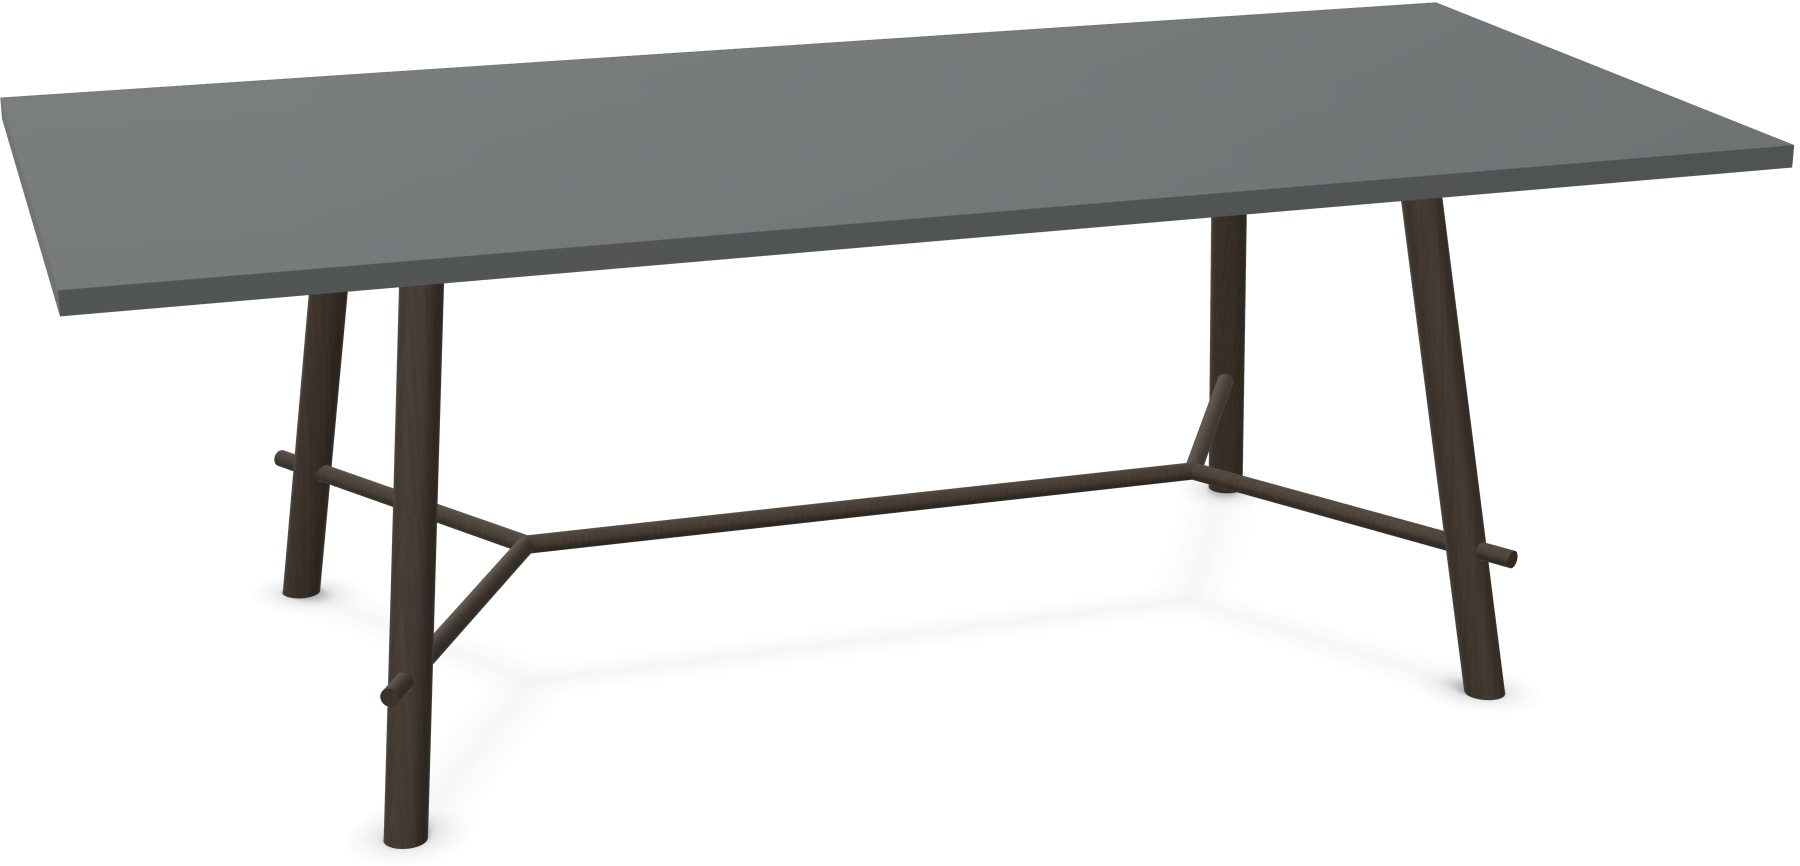 Record Living Maxi Tisch in Anthrazit / Eiche schwarz präsentiert im Onlineshop von KAQTU Design AG. Esstisch ist von Infiniti Design